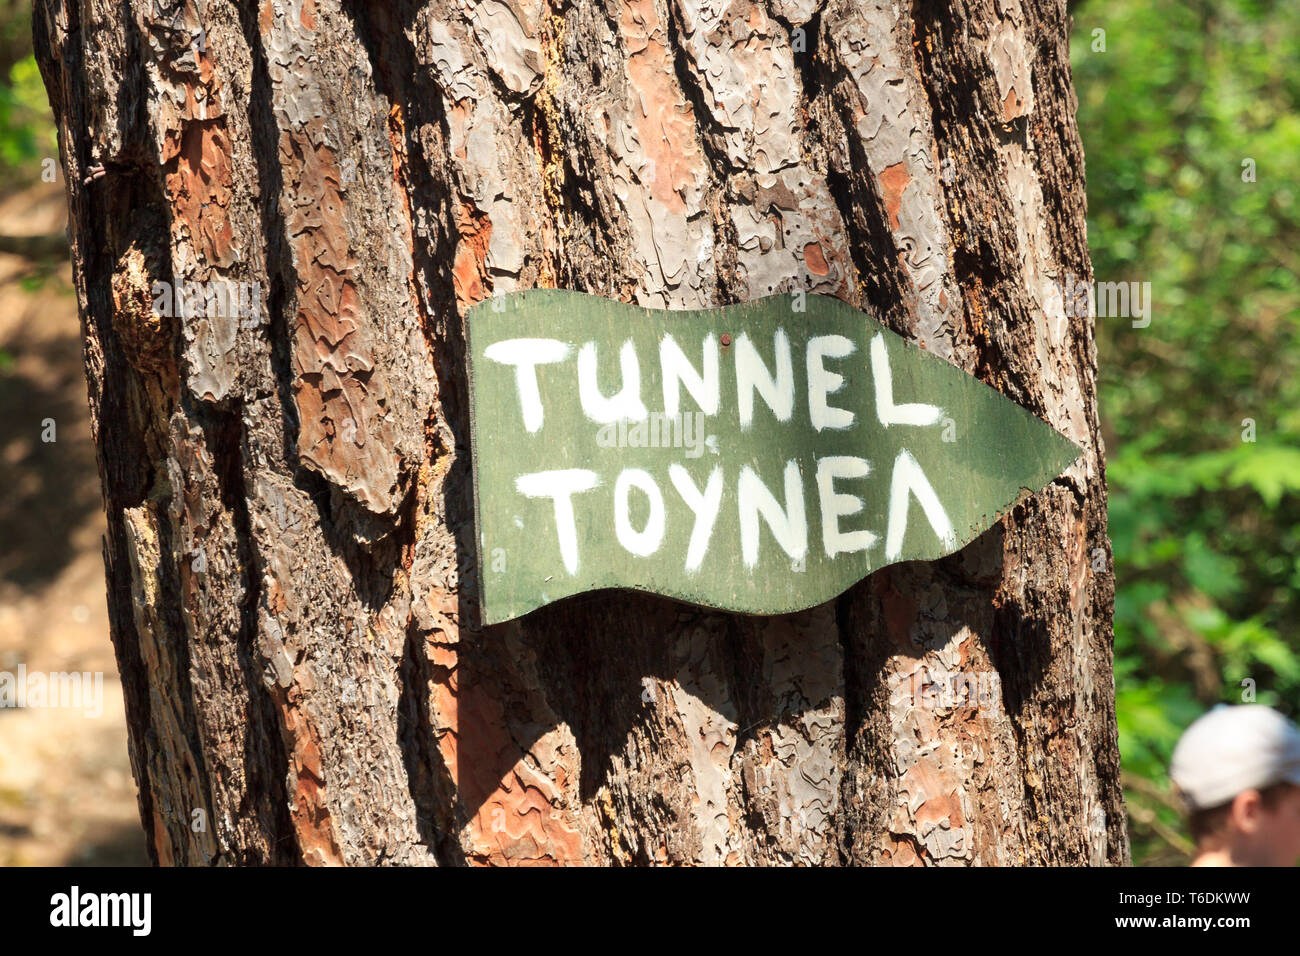 Schild grün am Baum, Wegweiser Epta Piges, Weg zum Tunnel Rhodos Griechenland / Sign on tree, signpost, way to tunnel, rhodes, greece Stock Photo